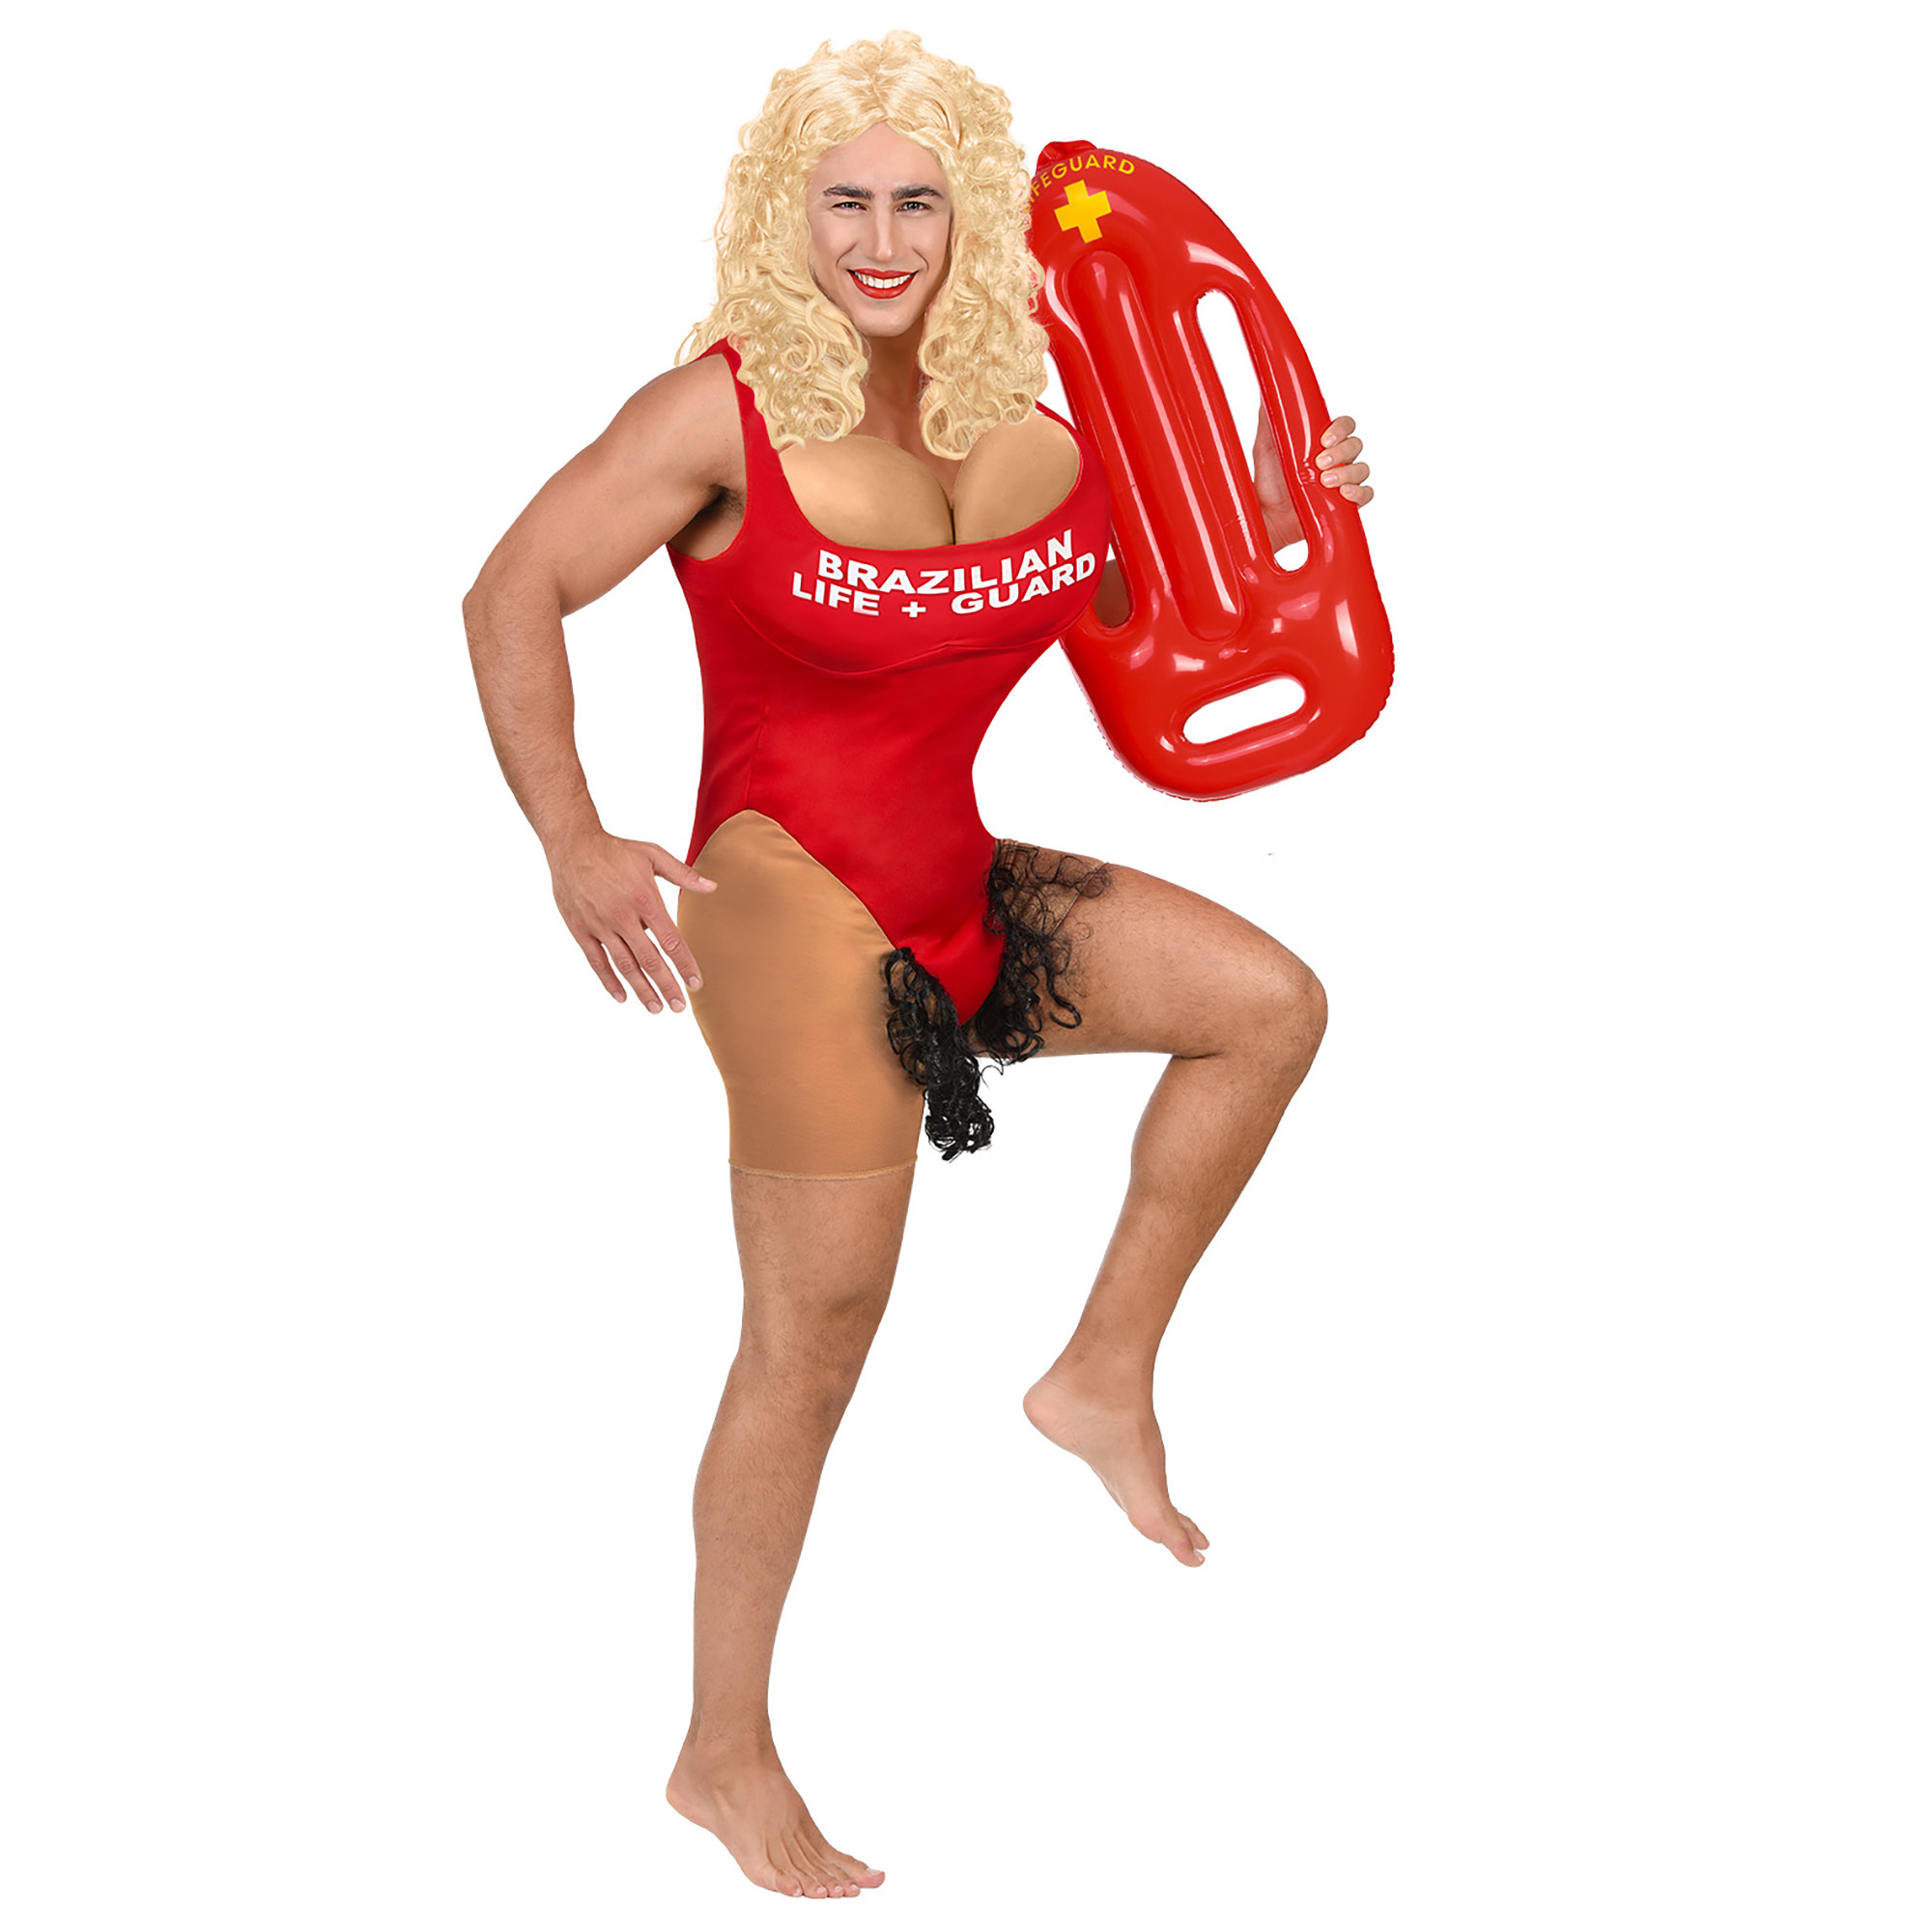 Braziliaanse lifeguard kostuum met overtollig haar onder badpak